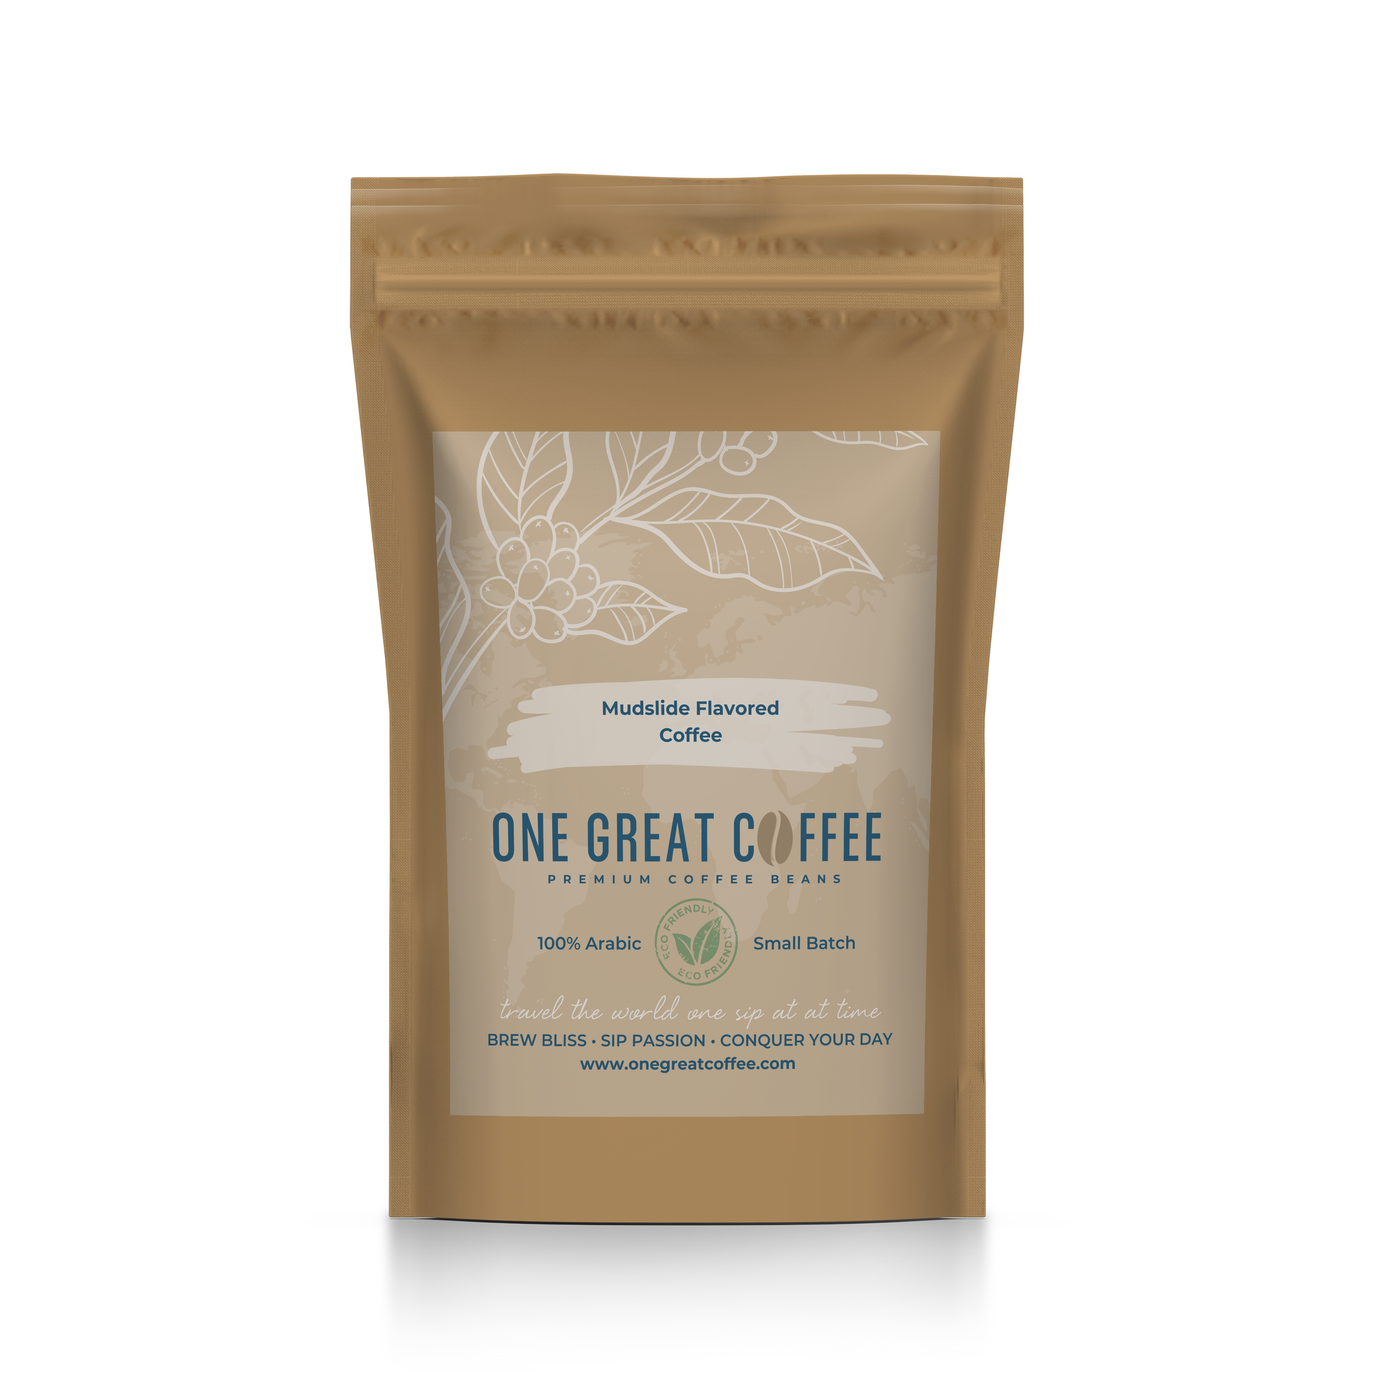 Mudslide Flavored Coffee